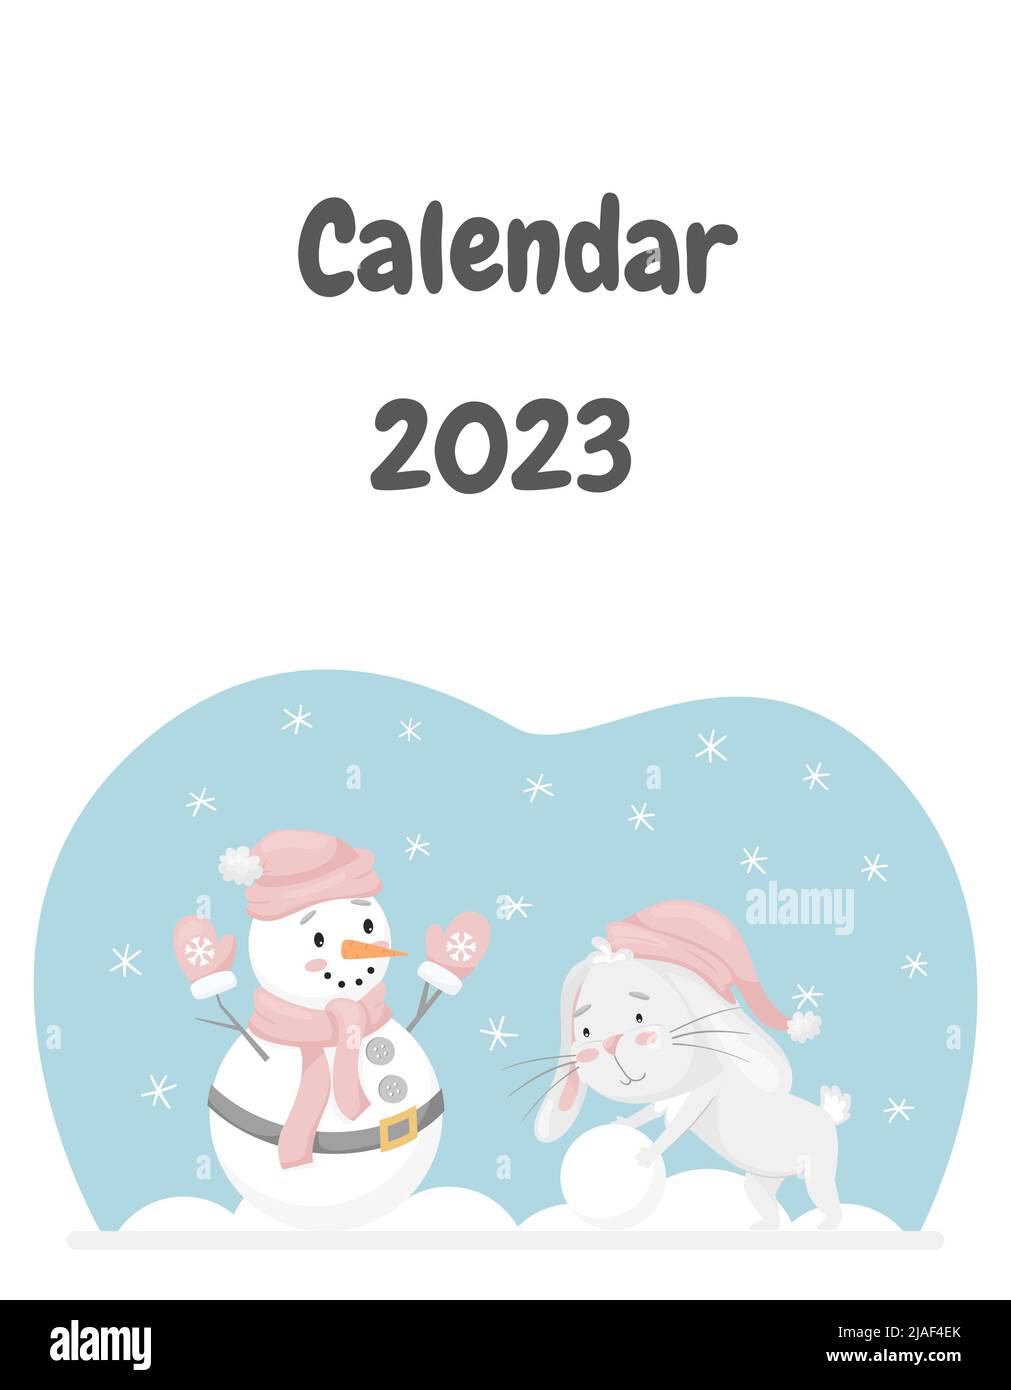 La copertina del calendario per il 2023 con un simpatico coniglio, il simbolo cinese dell'anno. Coniglio rotola una palla di neve, fa un pupazzo di neve. Attività di divertimento invernale. C Illustrazione Vettoriale